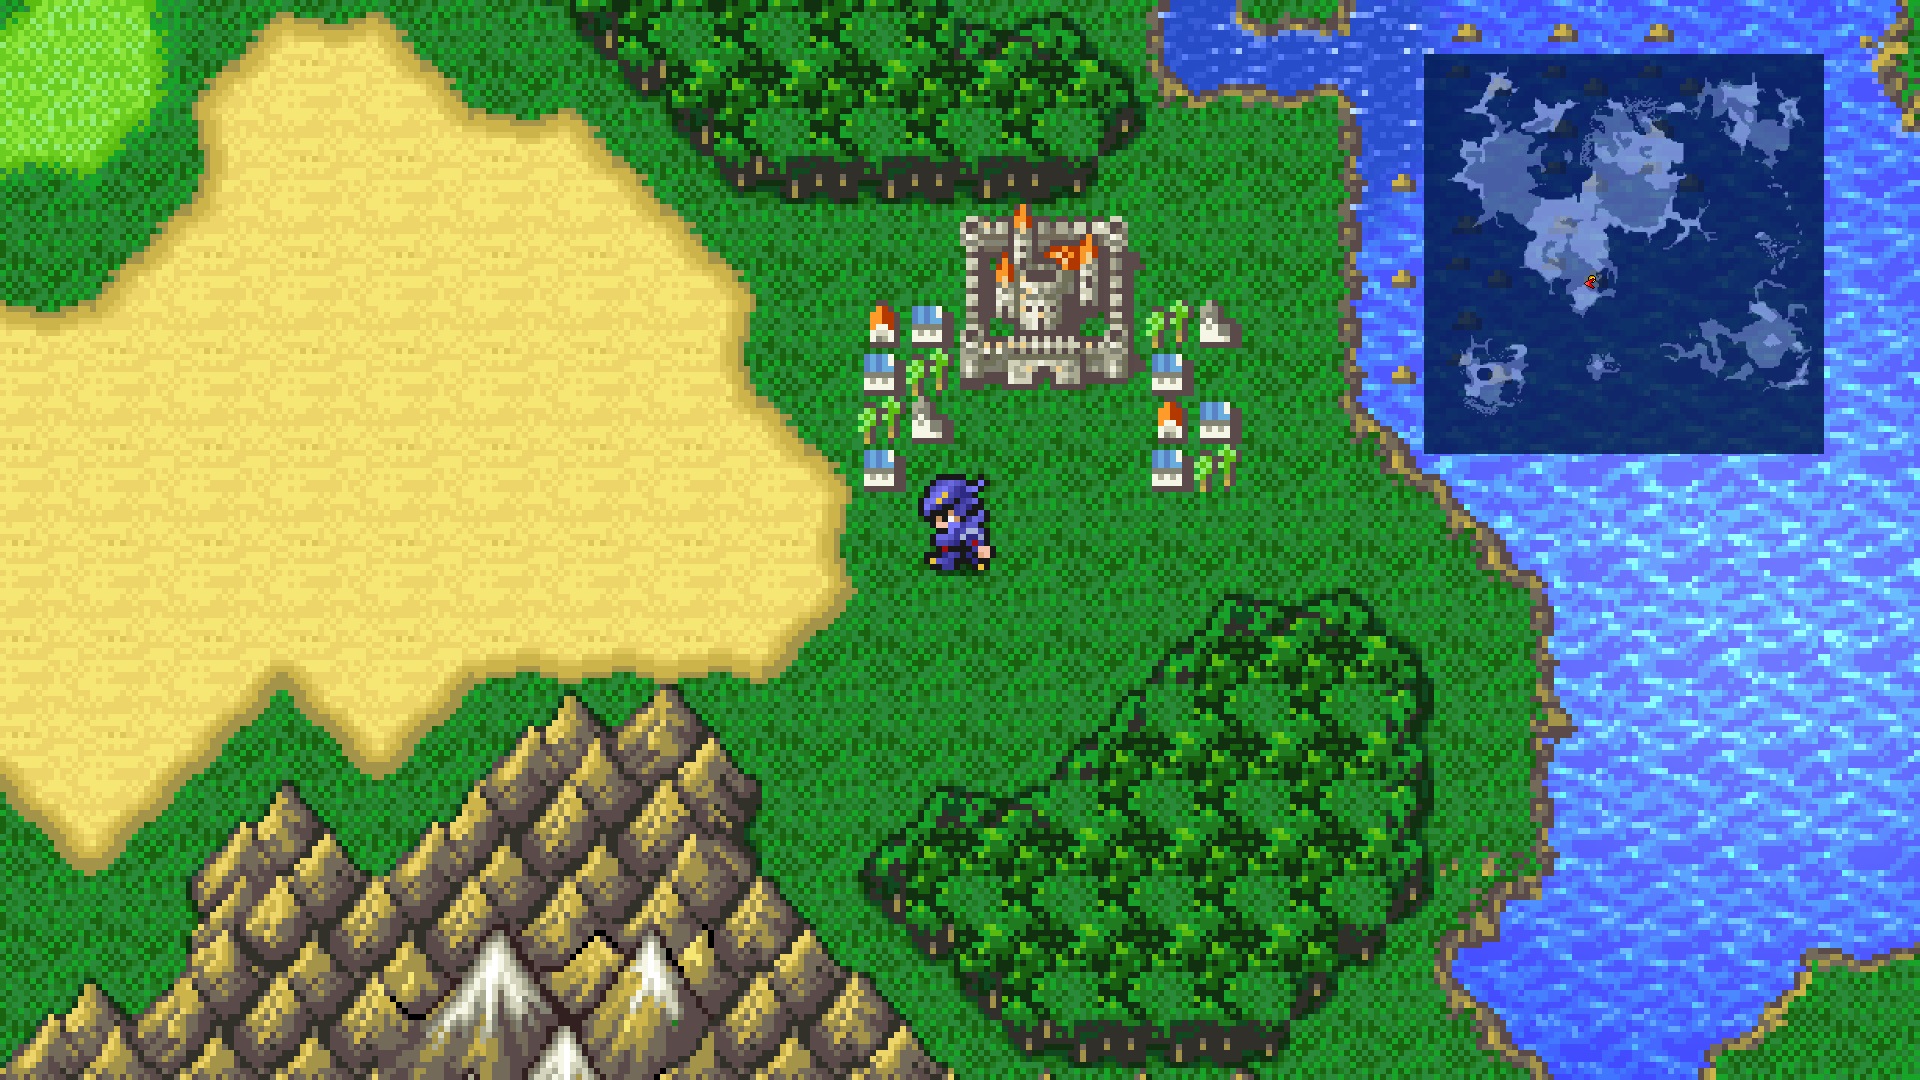 遊戲玩法屏幕截圖在城鎮附近的世界地圖上顯示了《最終幻想4》中的黑闇騎士塞西爾